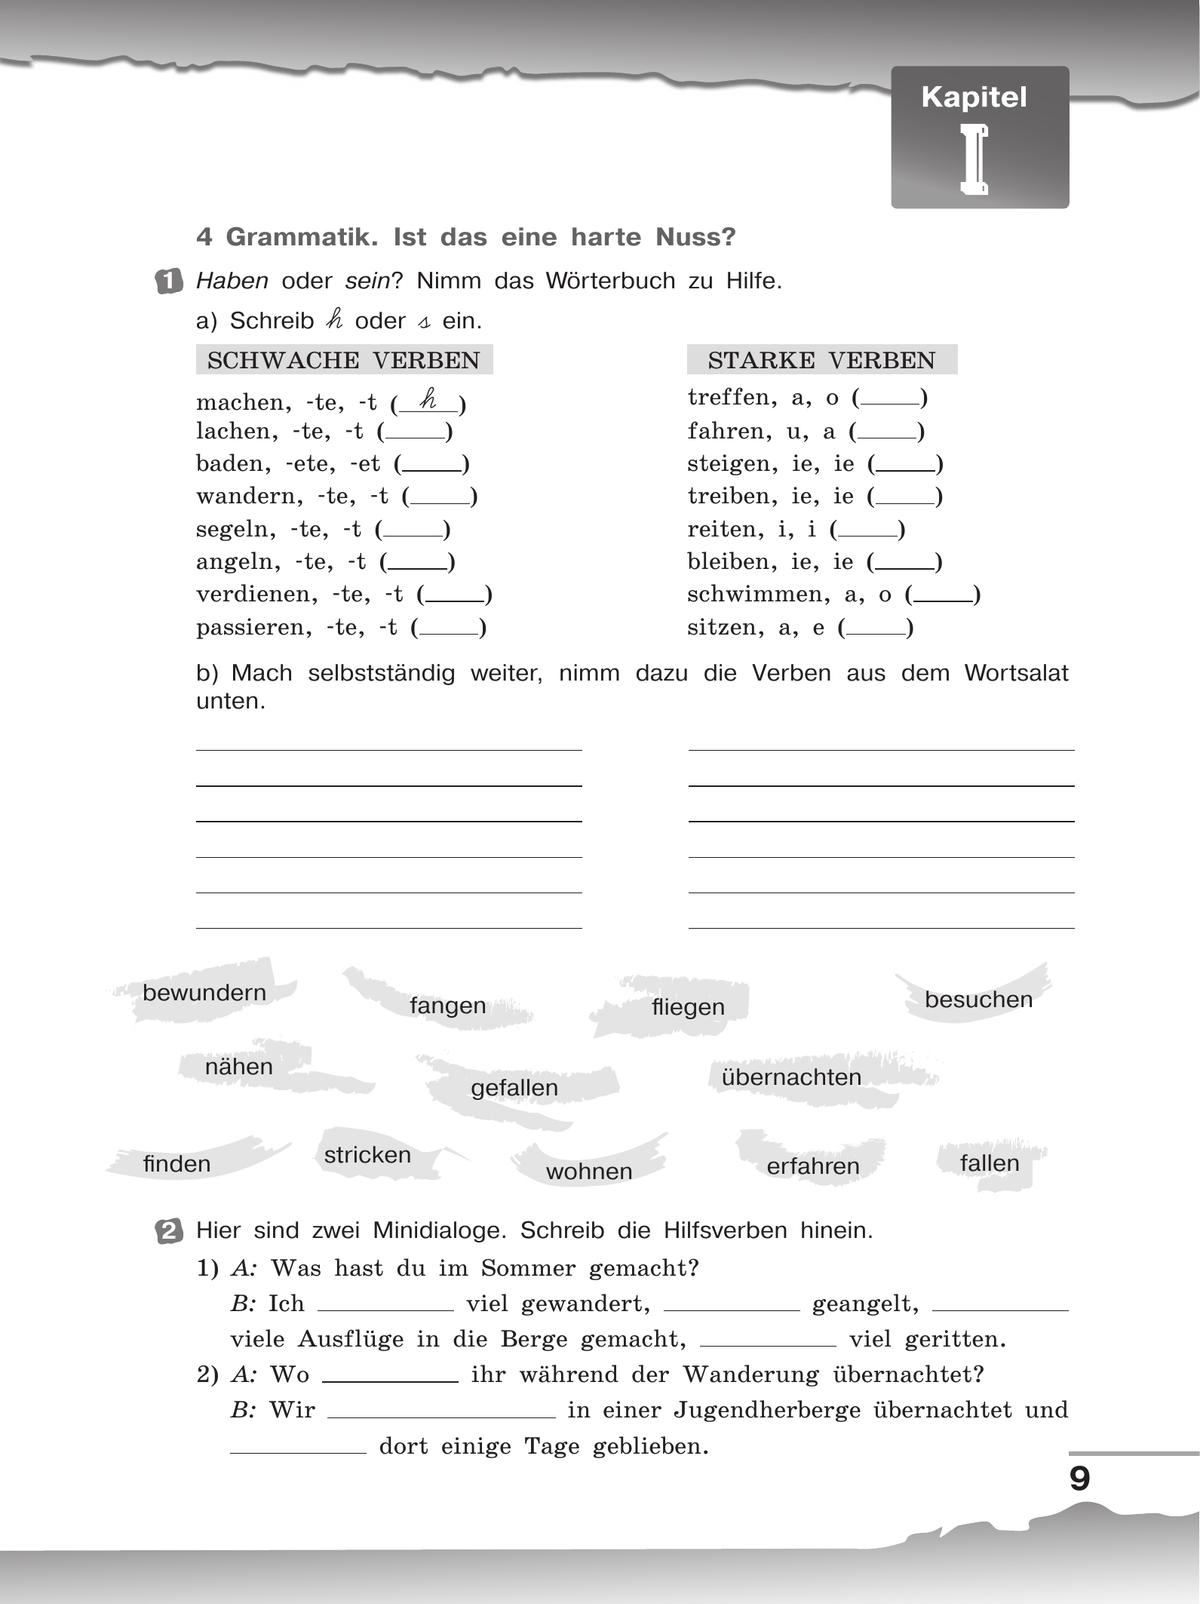 Немецкий язык. Рабочая тетрадь. 8 класс 4